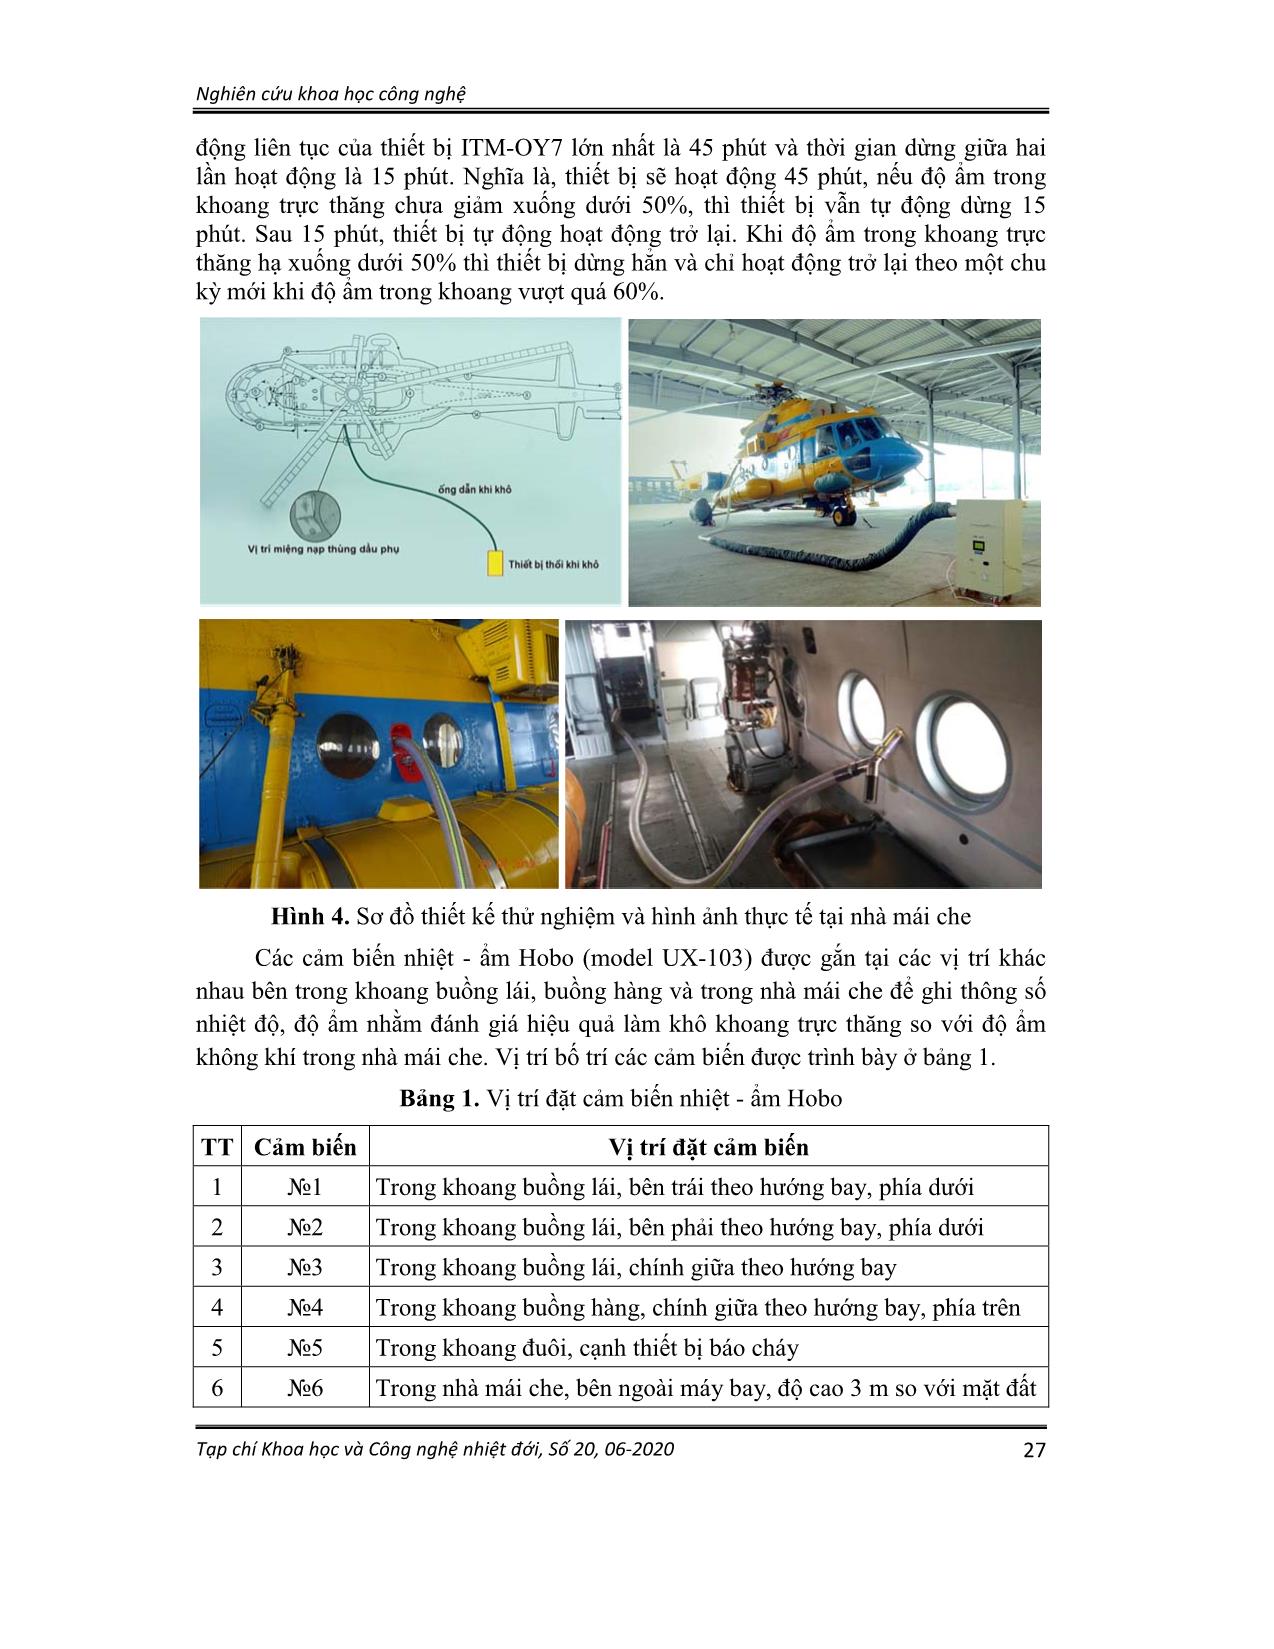 Thử nghiệm bảo quản máy bay trực thăng họ Mi bằng công nghệ khí khô trong điều kiện nhiệt đới Việt Nam trang 4